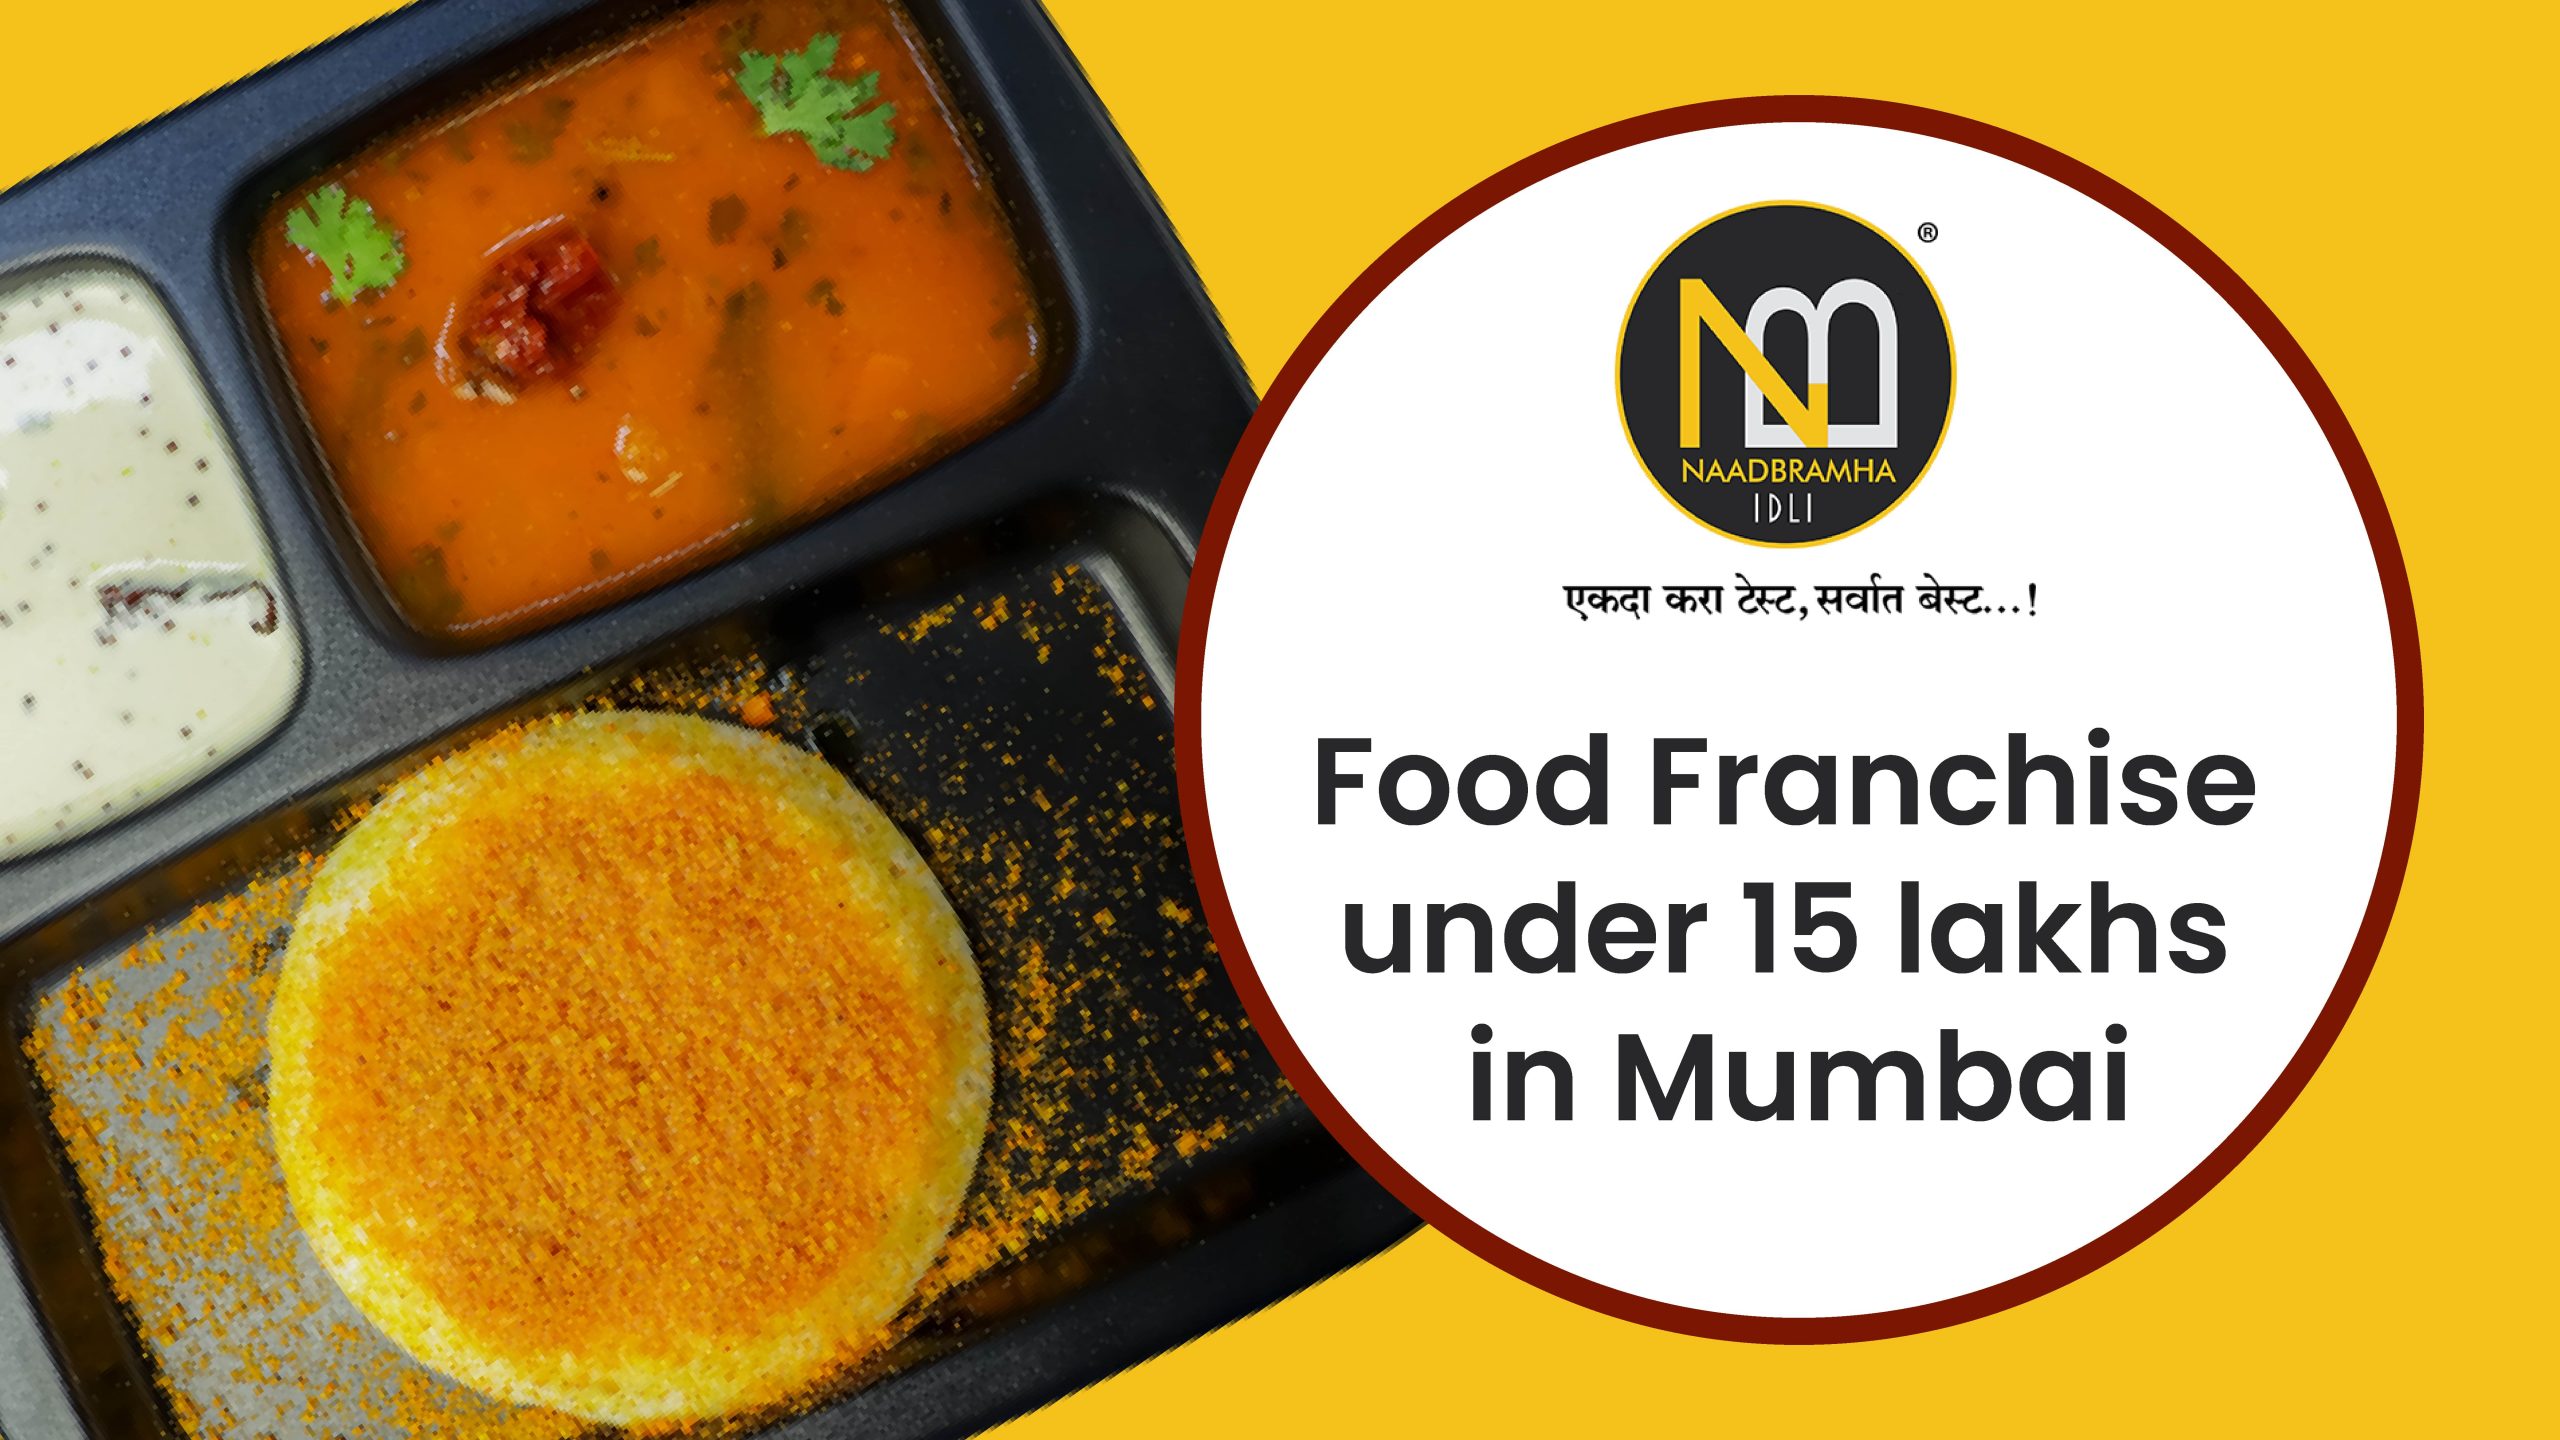 Food franchise under 15 lakhs in Mumbai